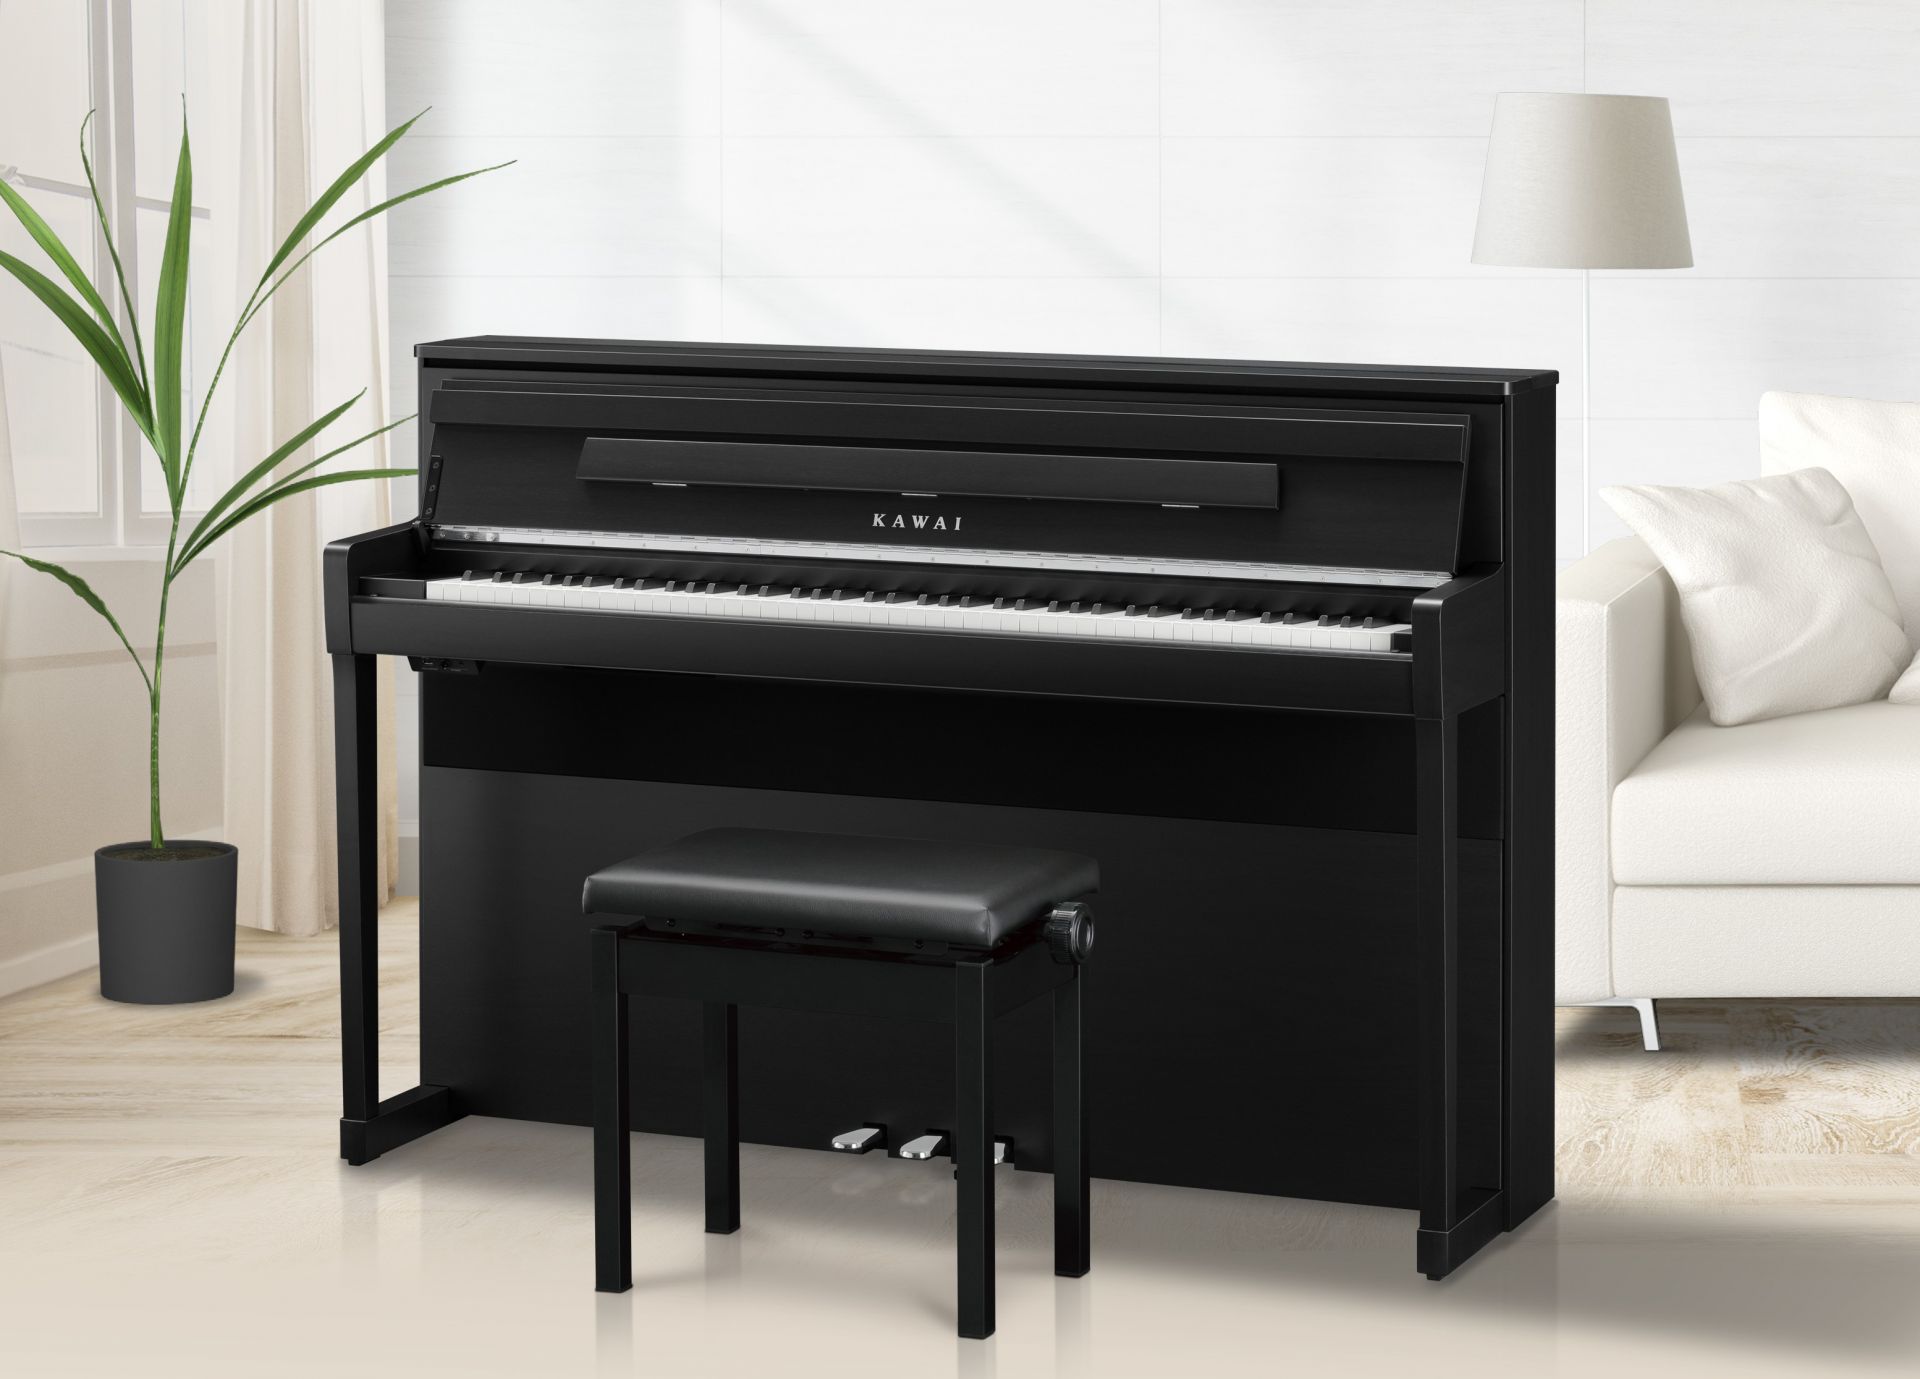 *KAWAI電子ピアノ新製品情報！2020年3月10日(火)発売開始！ こんにちは。電子ピアノ担当の中川です♪]]この度、アコースティックピアノに近いリアルなタッチ感で大人気のカワイCAシリーズがモデルチェンジ！]]島村楽器コラボレーションモデルを含めた全3モデルが新製品ですのでご紹介いたします。  […]